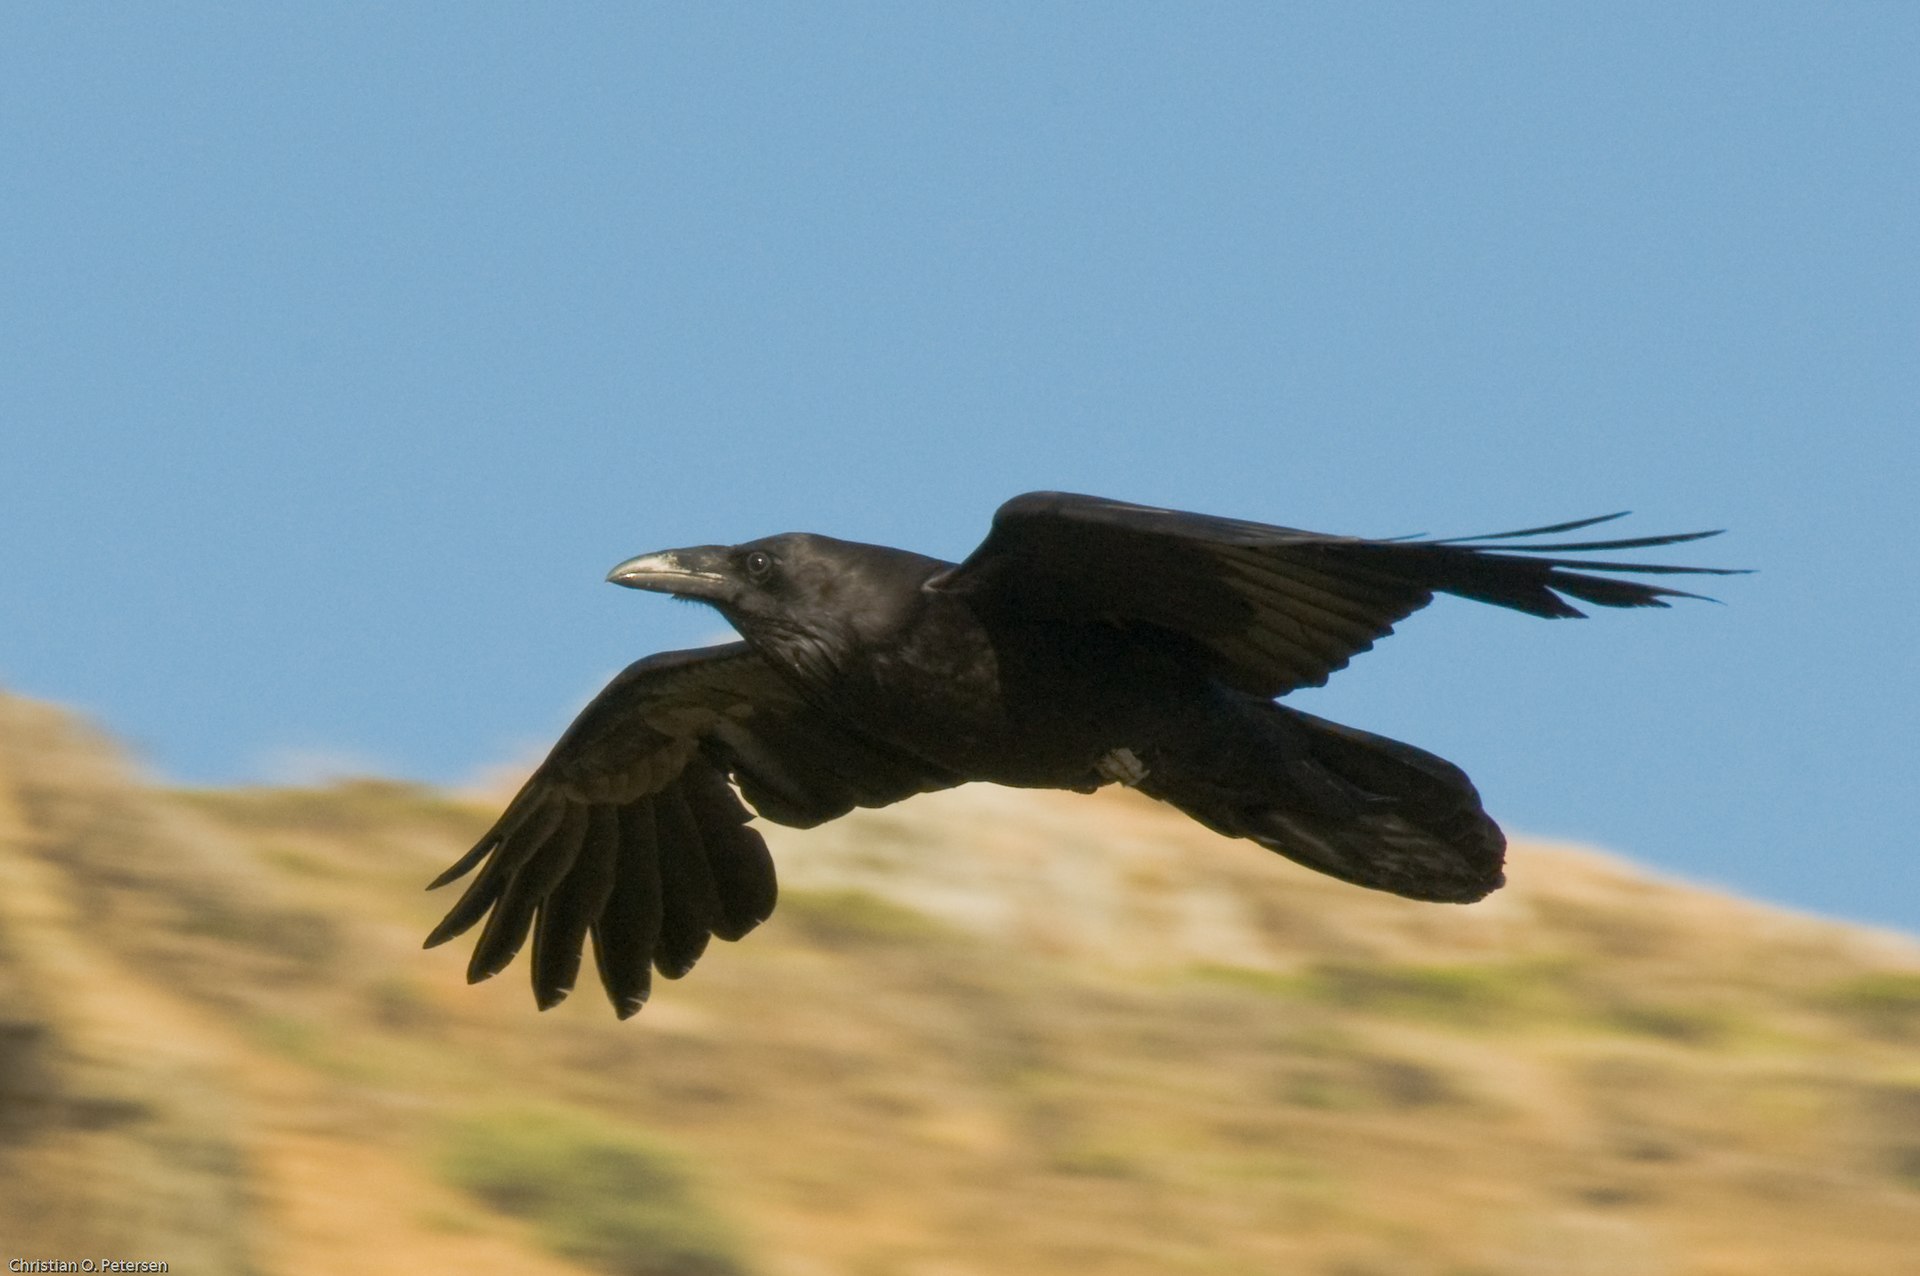 Common raven of North America (Corvus corax principalis) in flight. Source: Wikipedia.